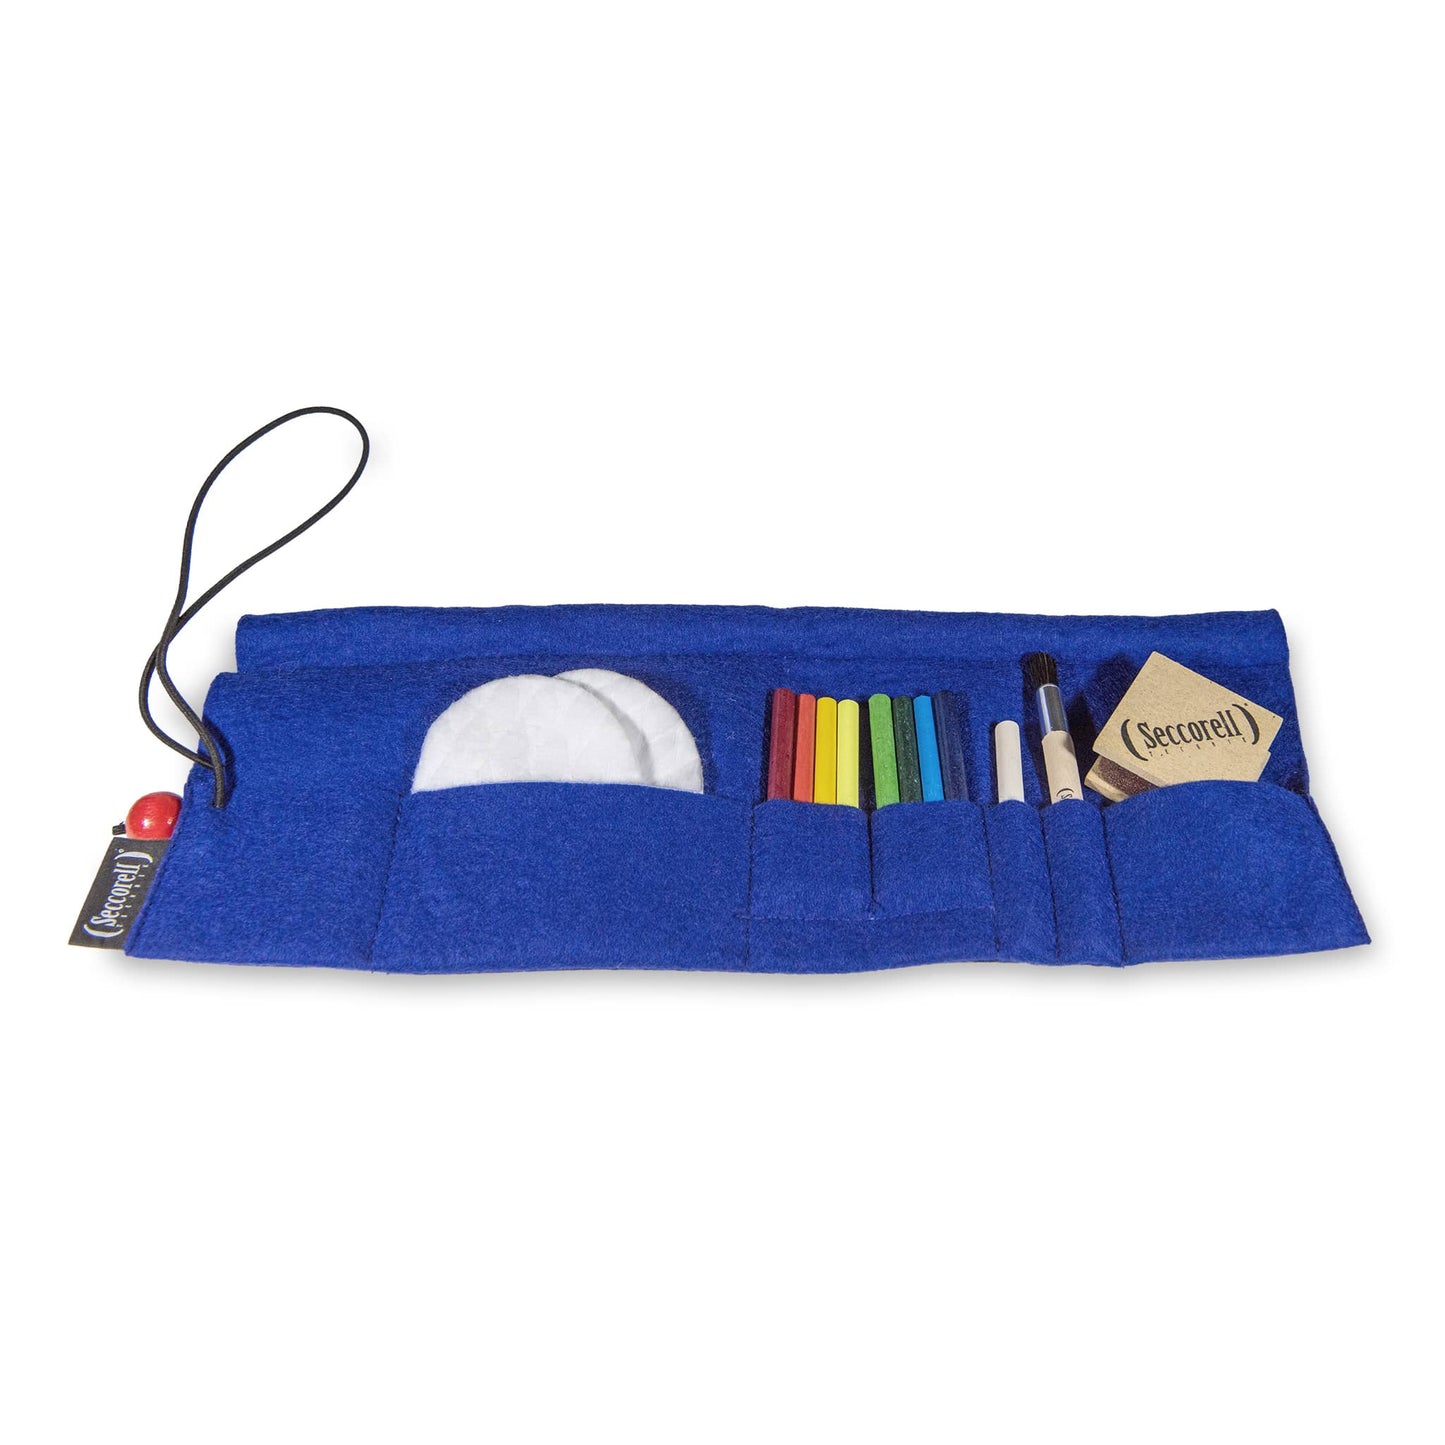 Seccorell Filz-Rolltasche geöffnet in Blau mit Gummikordel und roter Holzperle, inklusive Farbstäbchen, Reibeblock, Naturbürste und Zubehörfach.